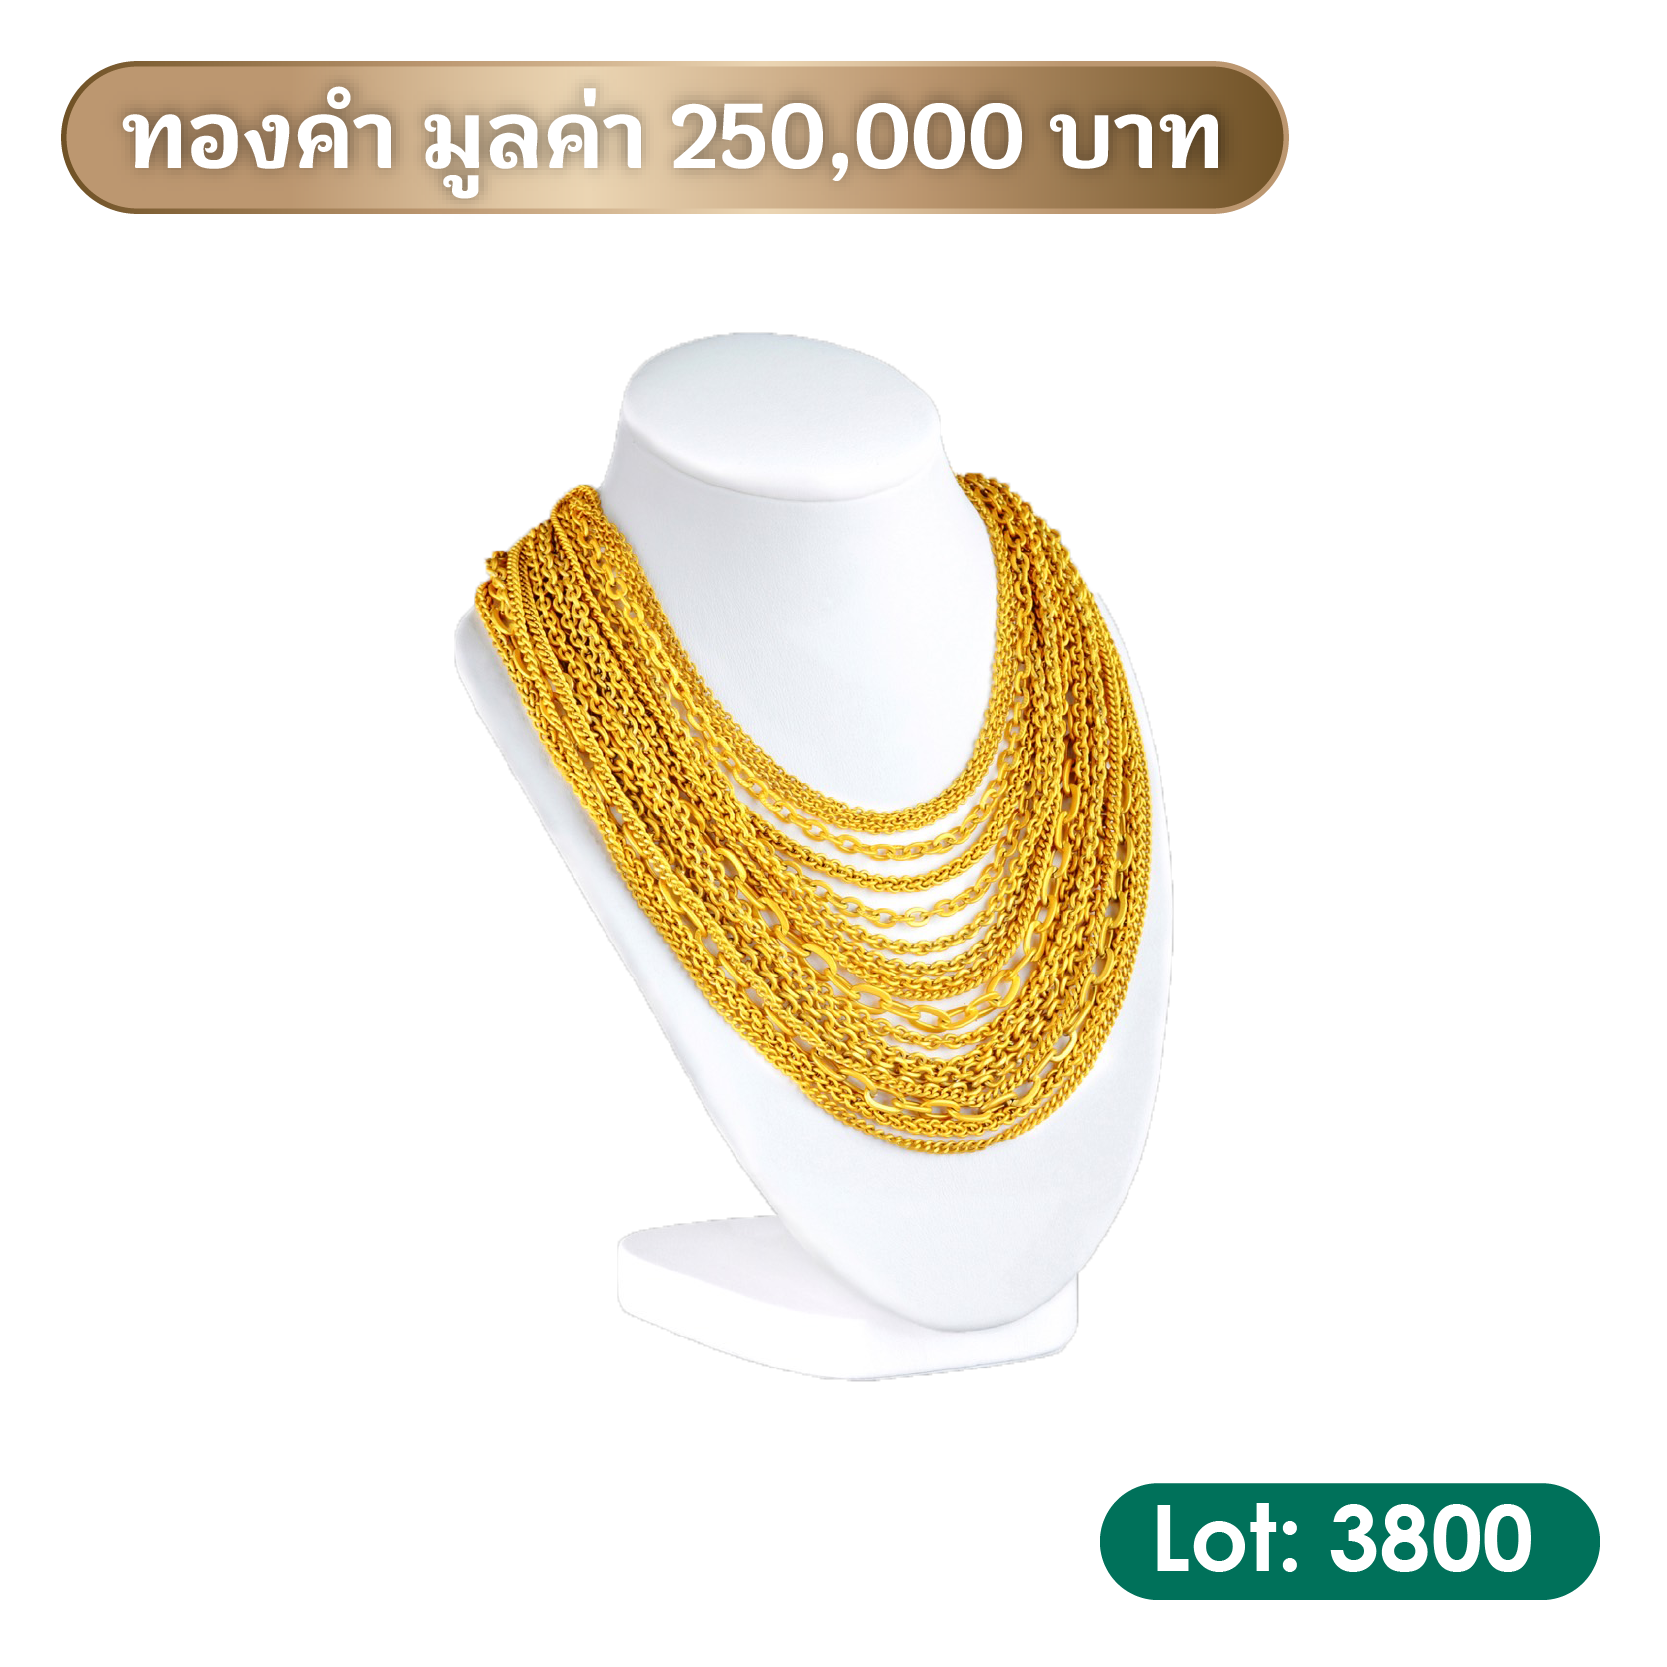 8. ทองคำ มูลค่า 250,000 บาท | Lot: 3800